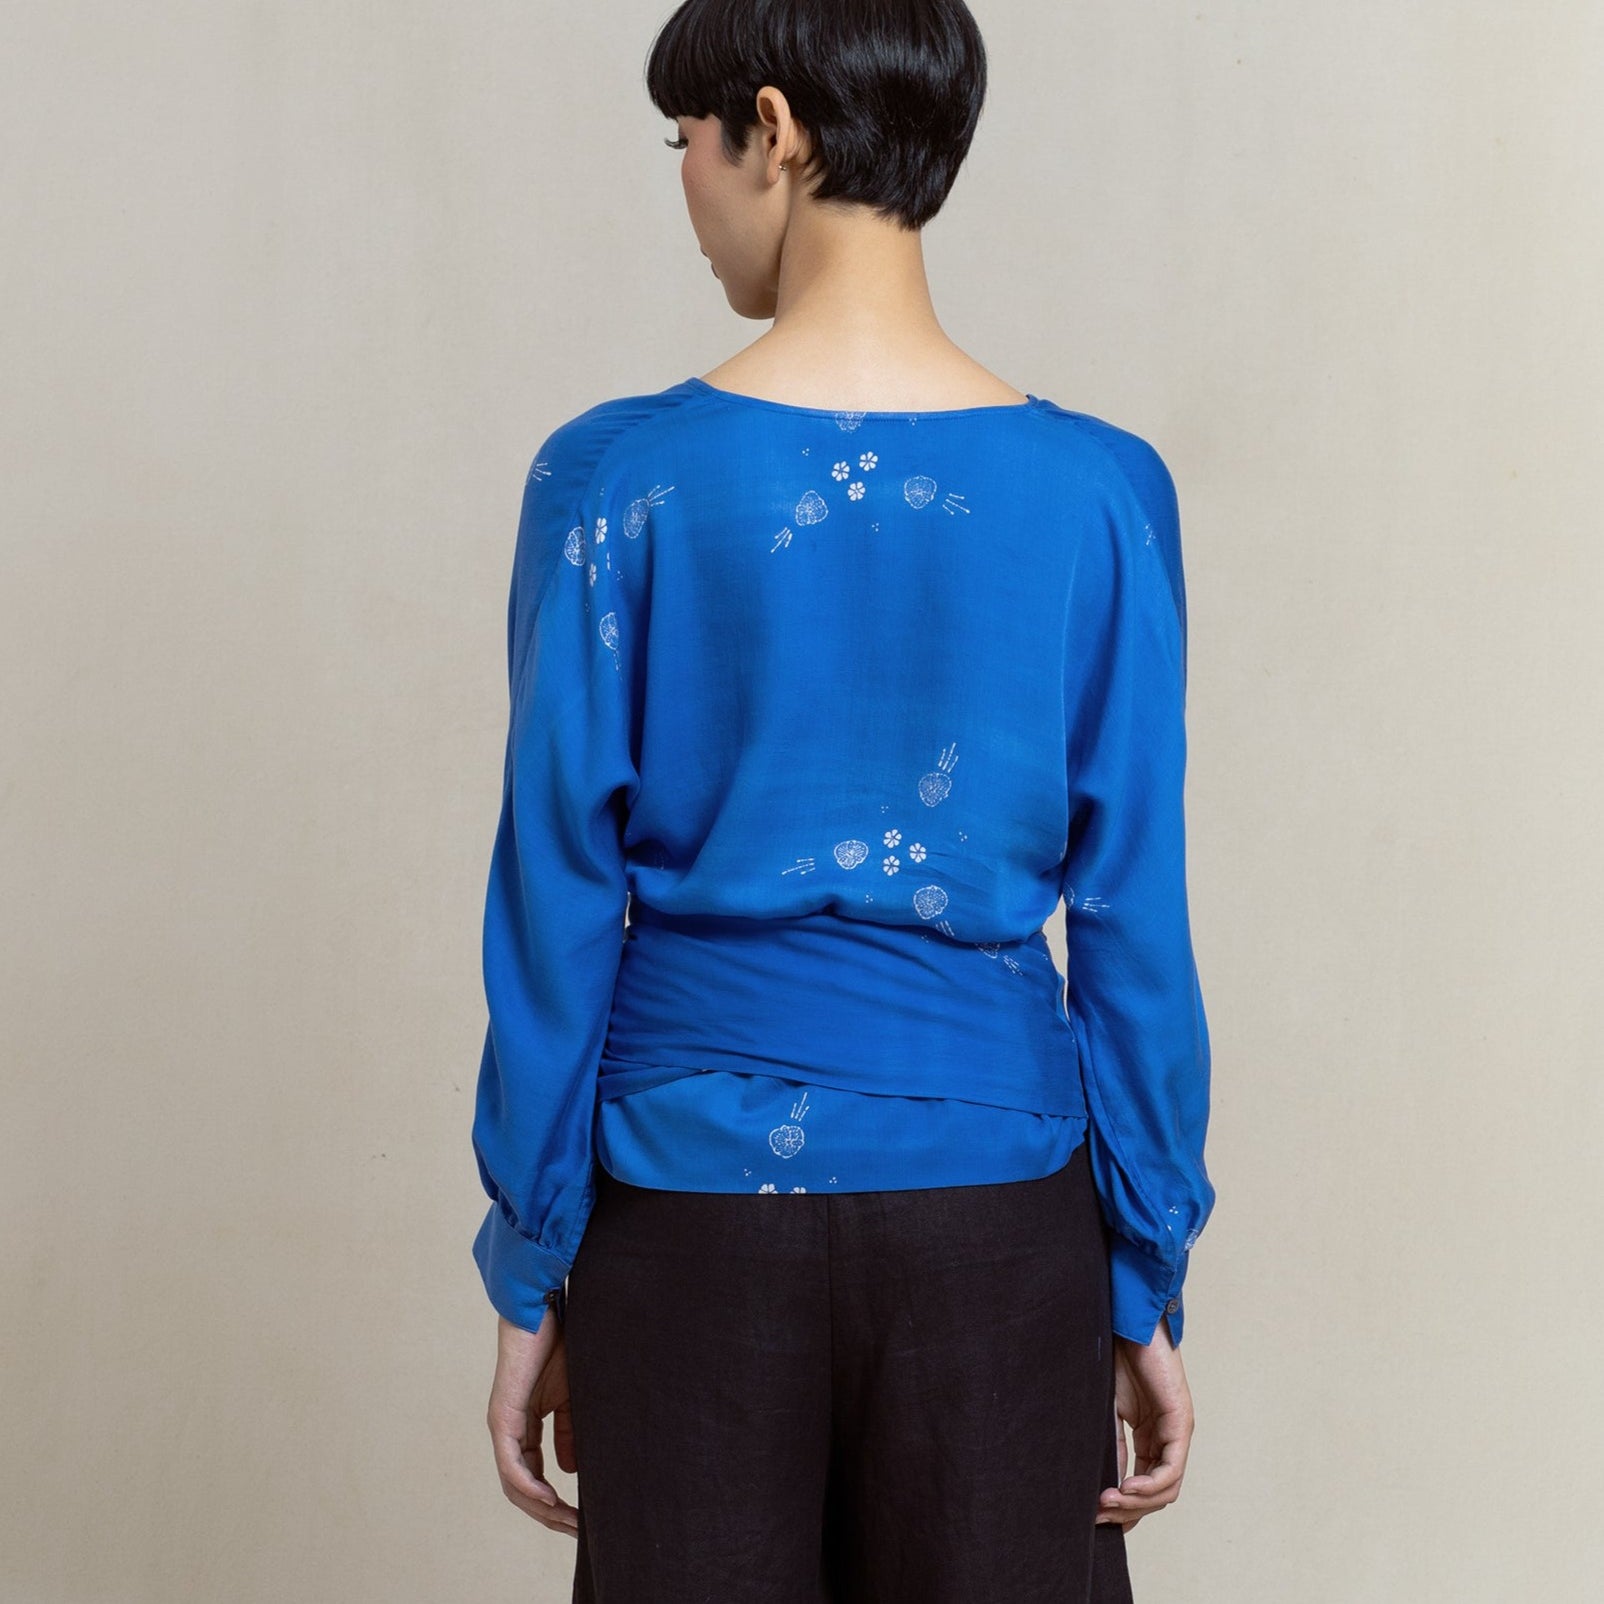 batik top, batik blouse, indigo dye, naturally dye, women's fashion